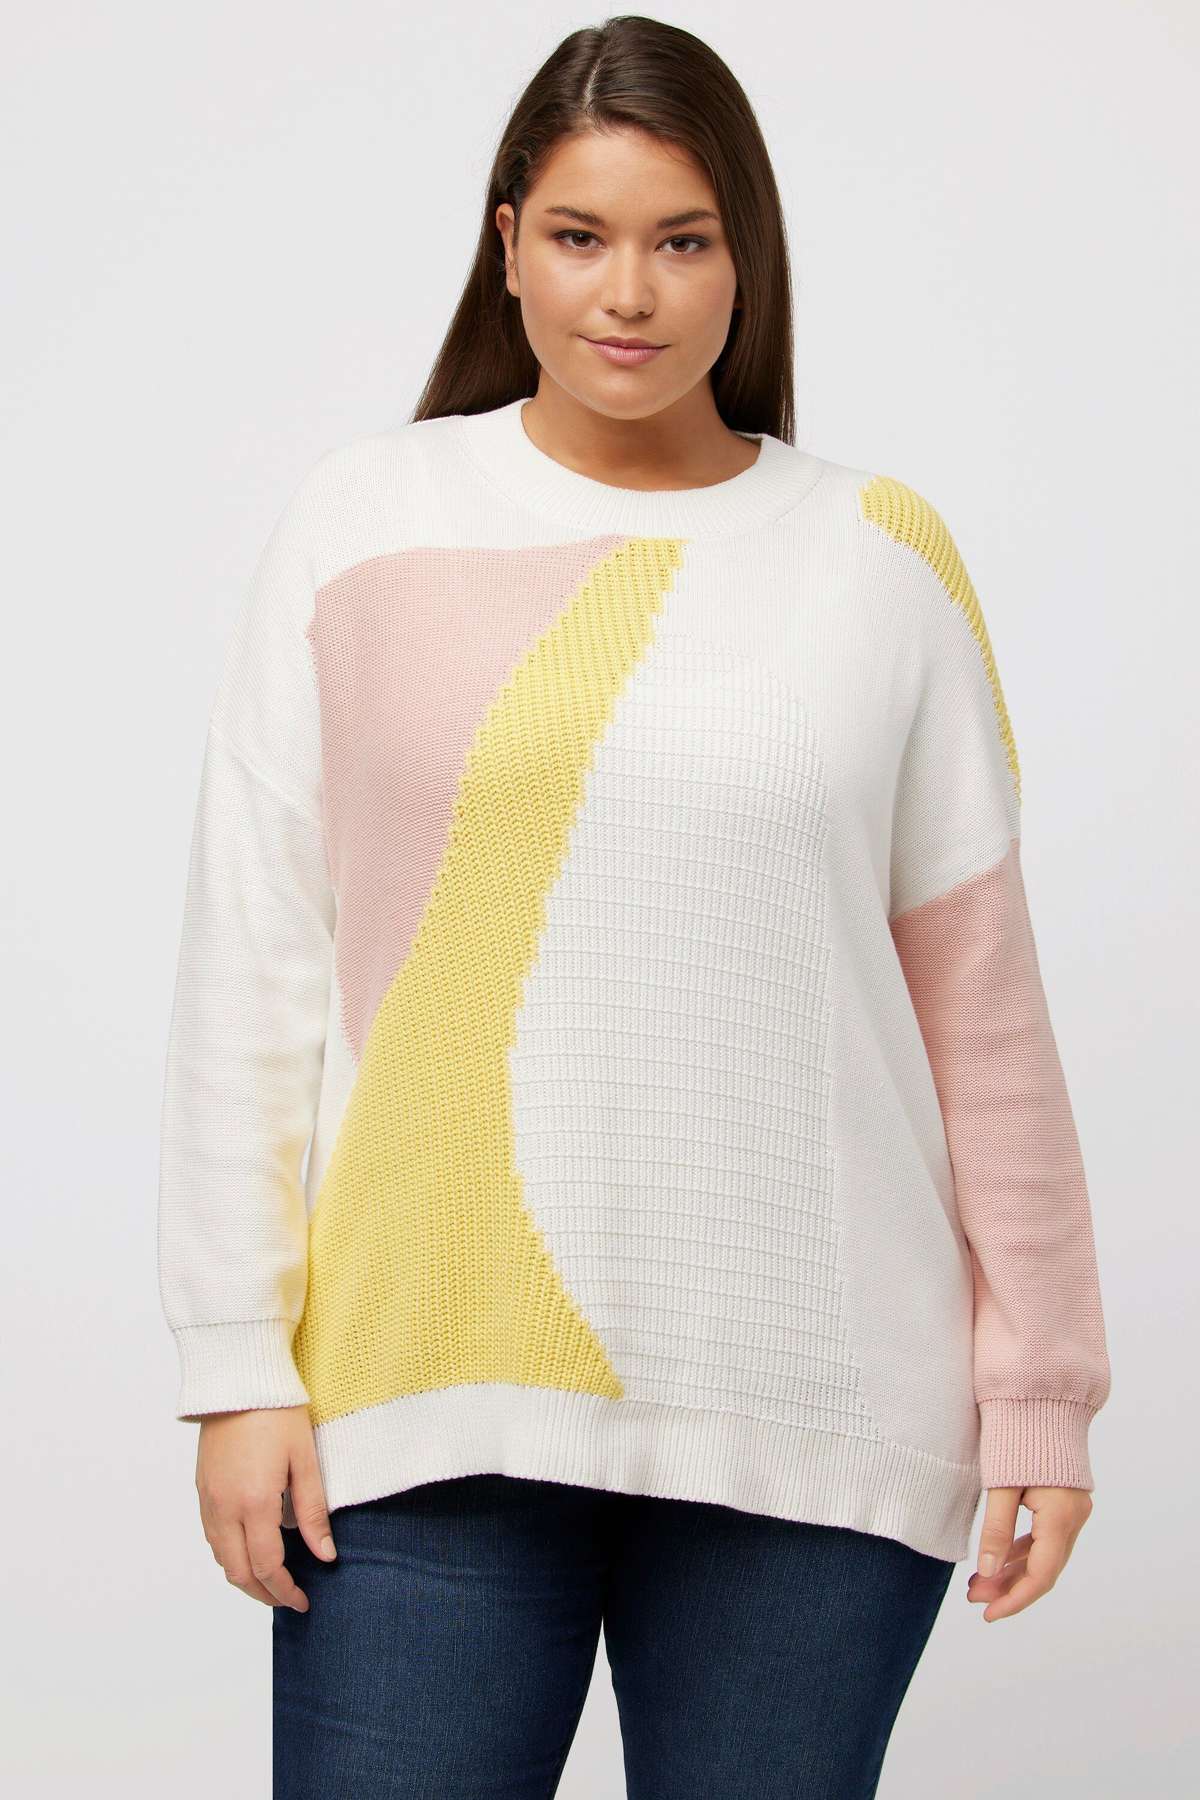 Вязаный свитер-пуловер с графическим узором оверсайз с круглым вырезом